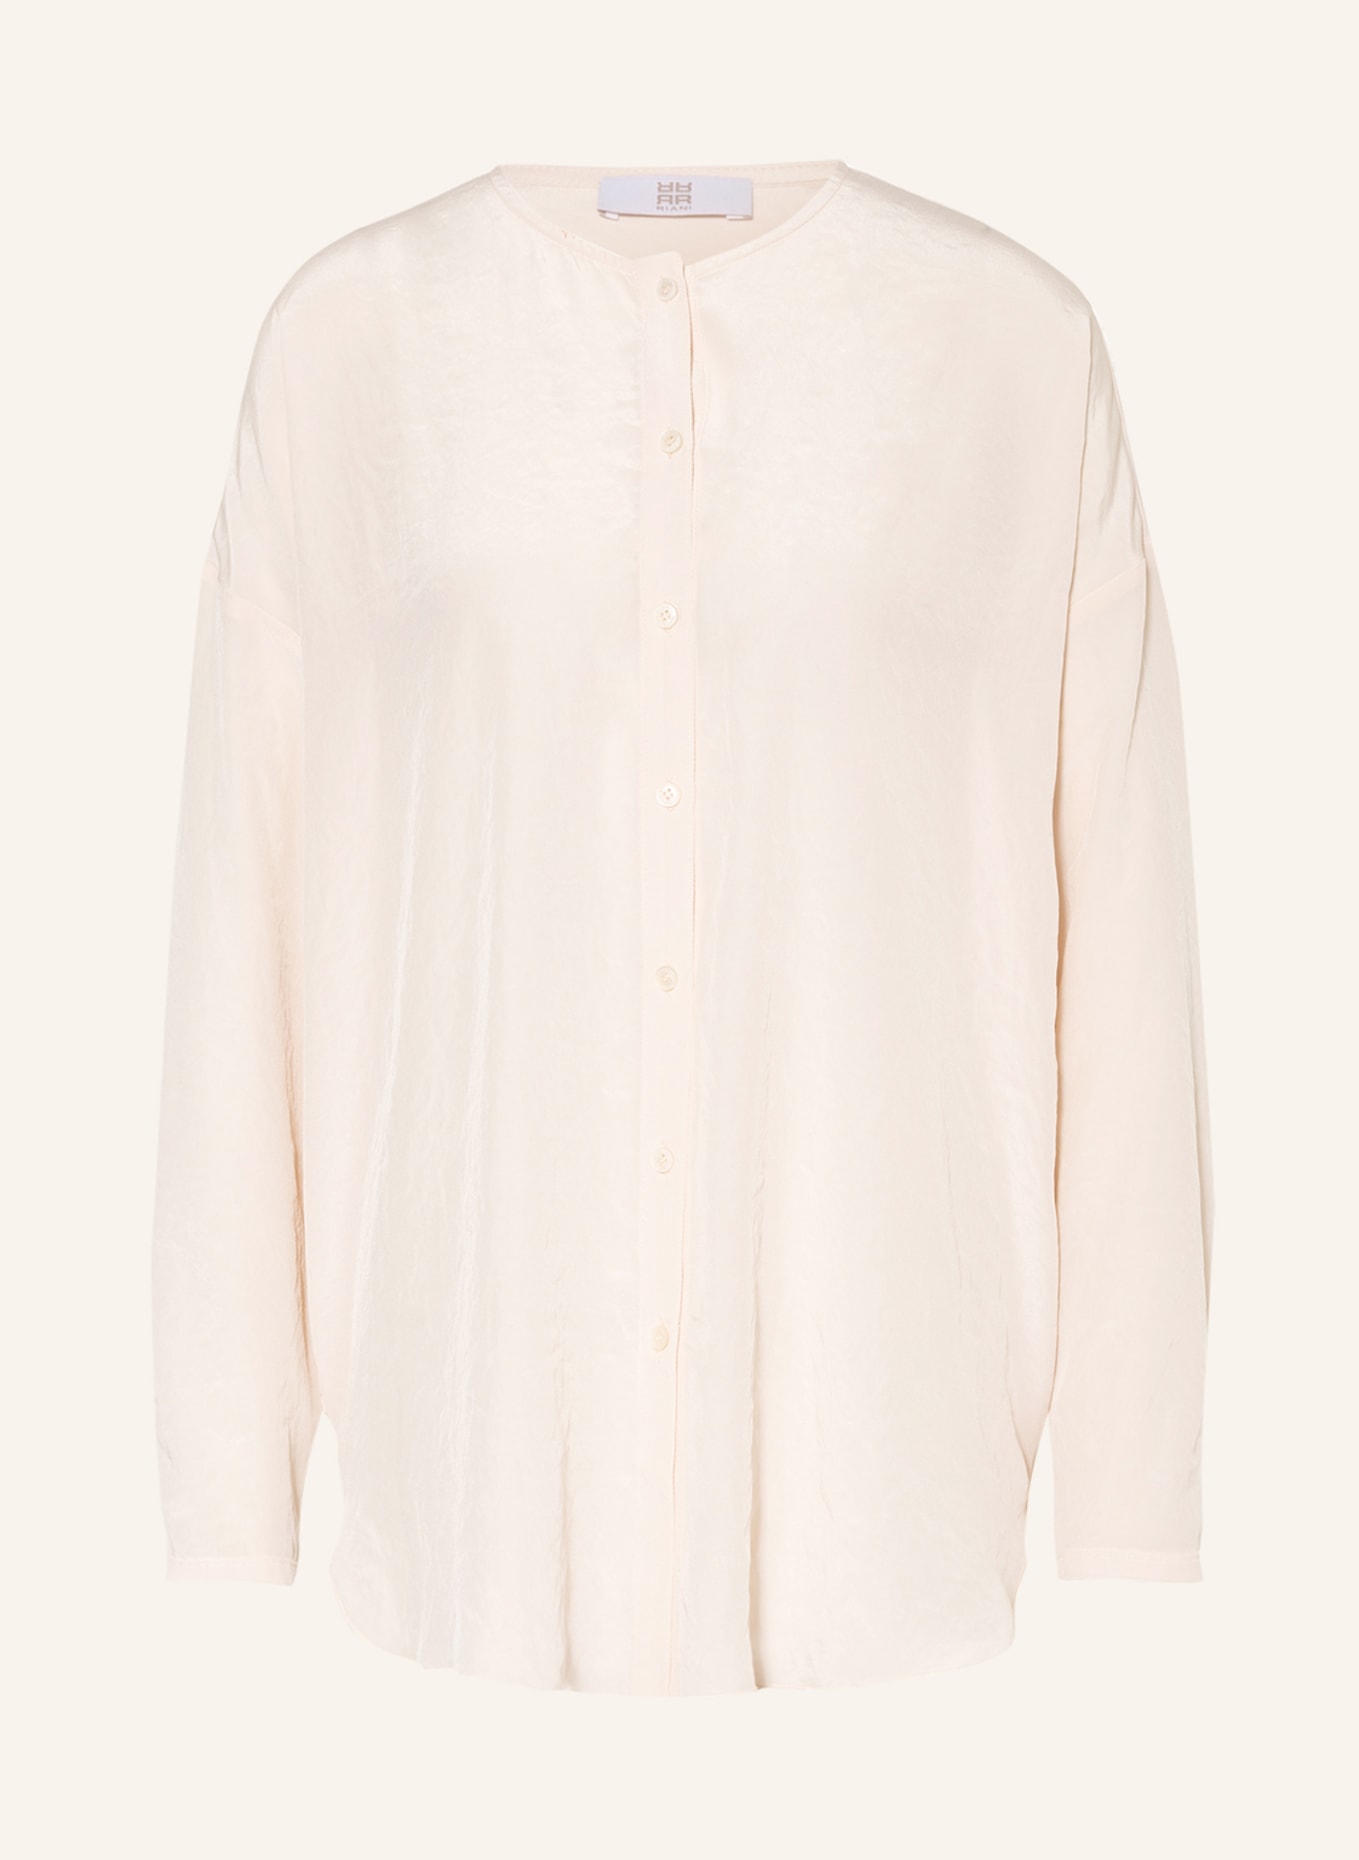 RIANI Oversized-Bluse, Farbe: CREME (Bild 1)